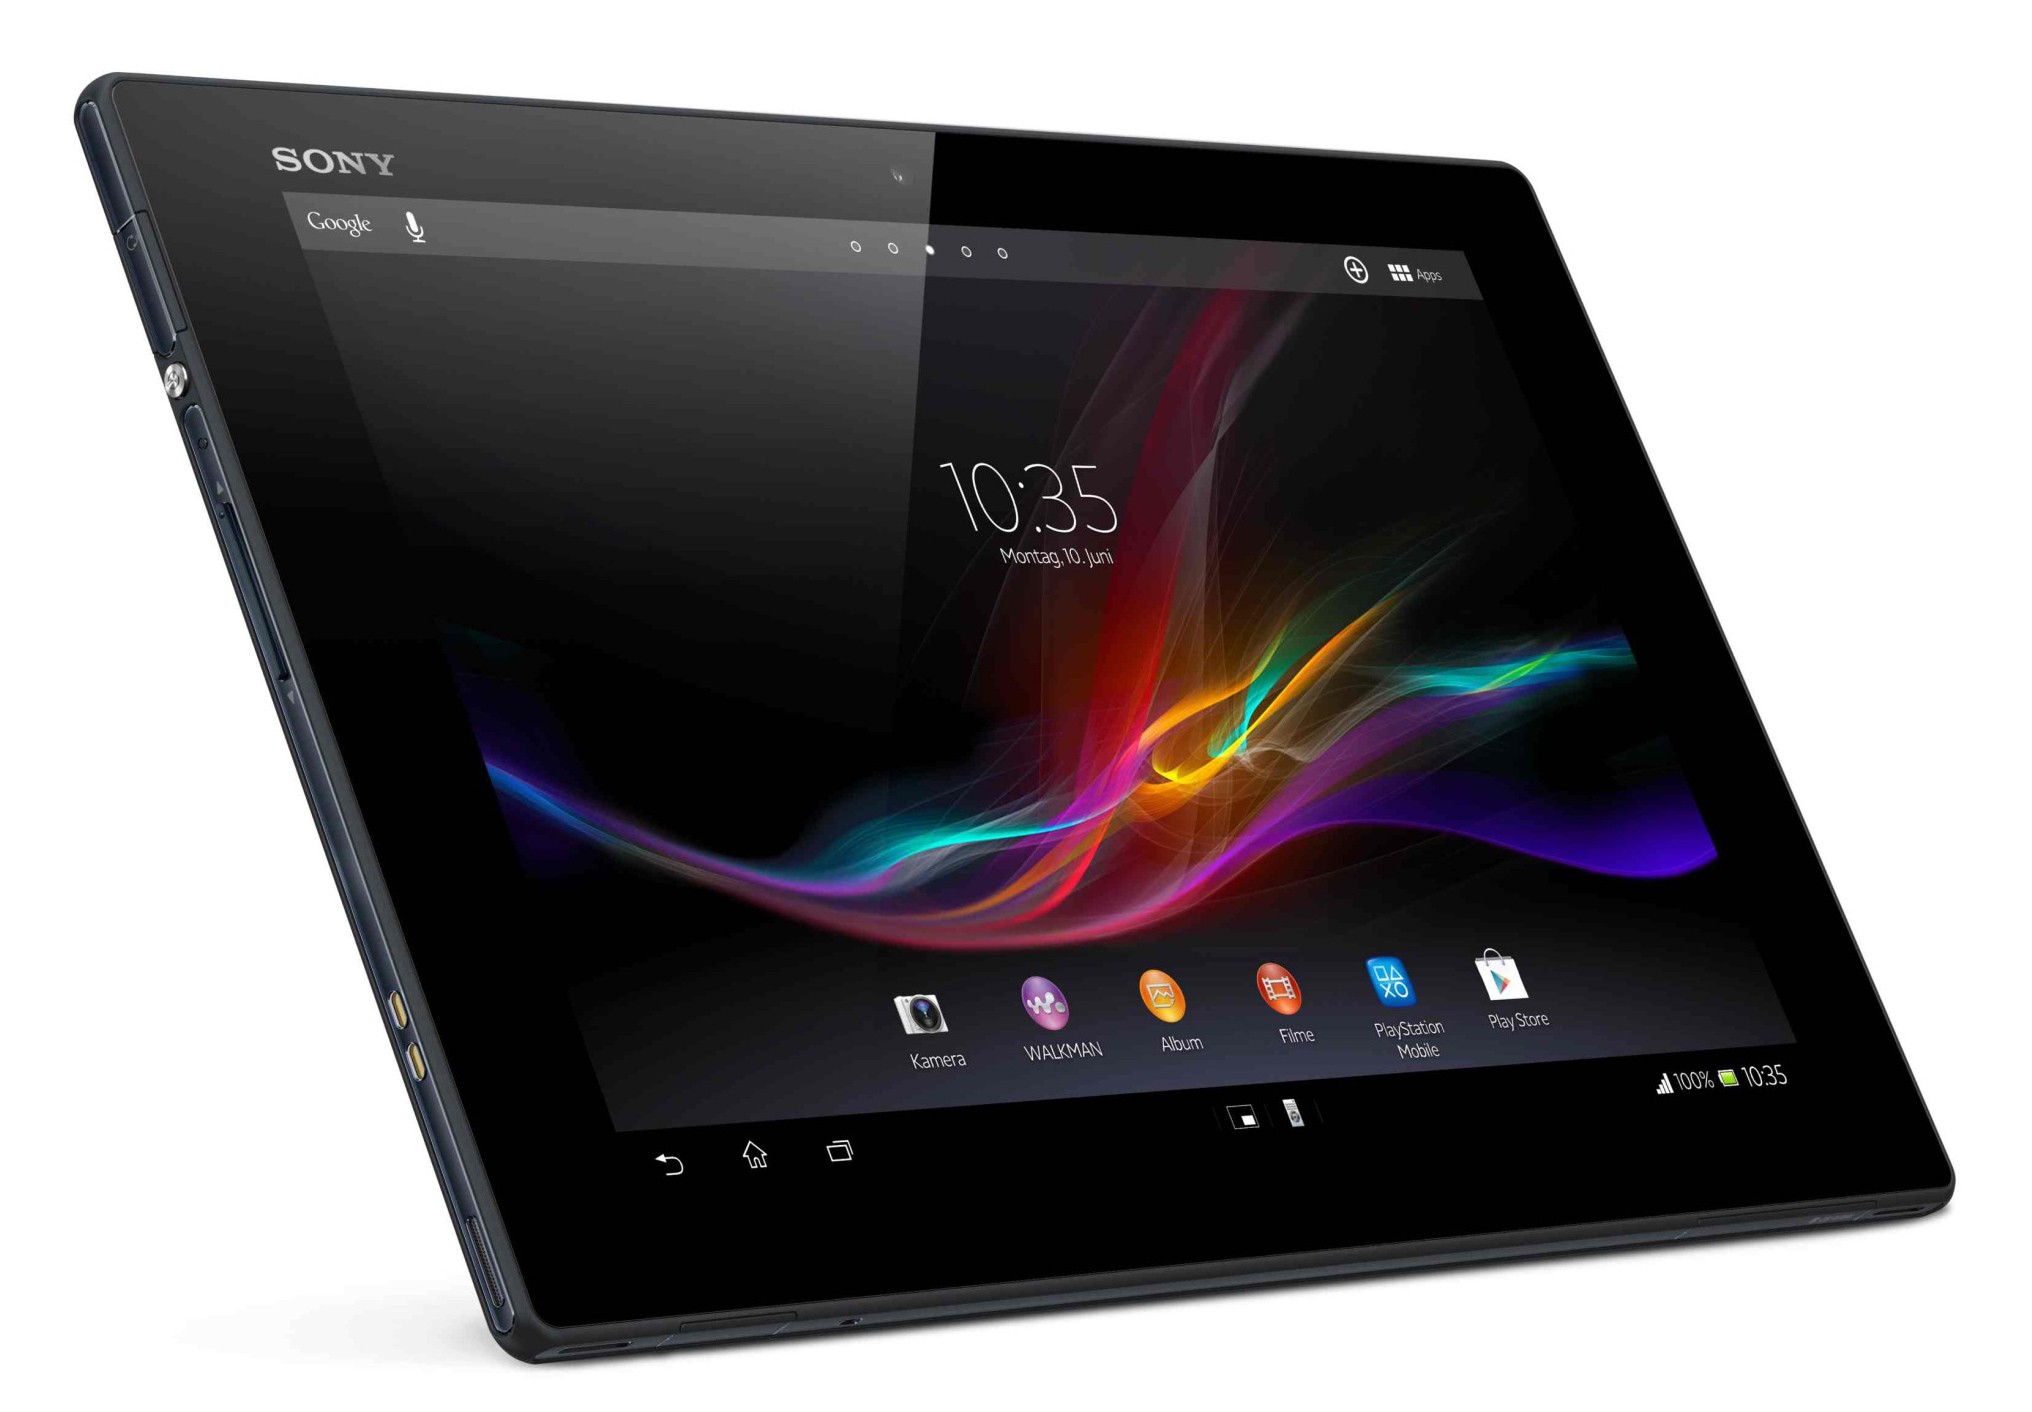 Sony confirma que la Xperia Z4 Tablet se anunciará en el MWC 2015